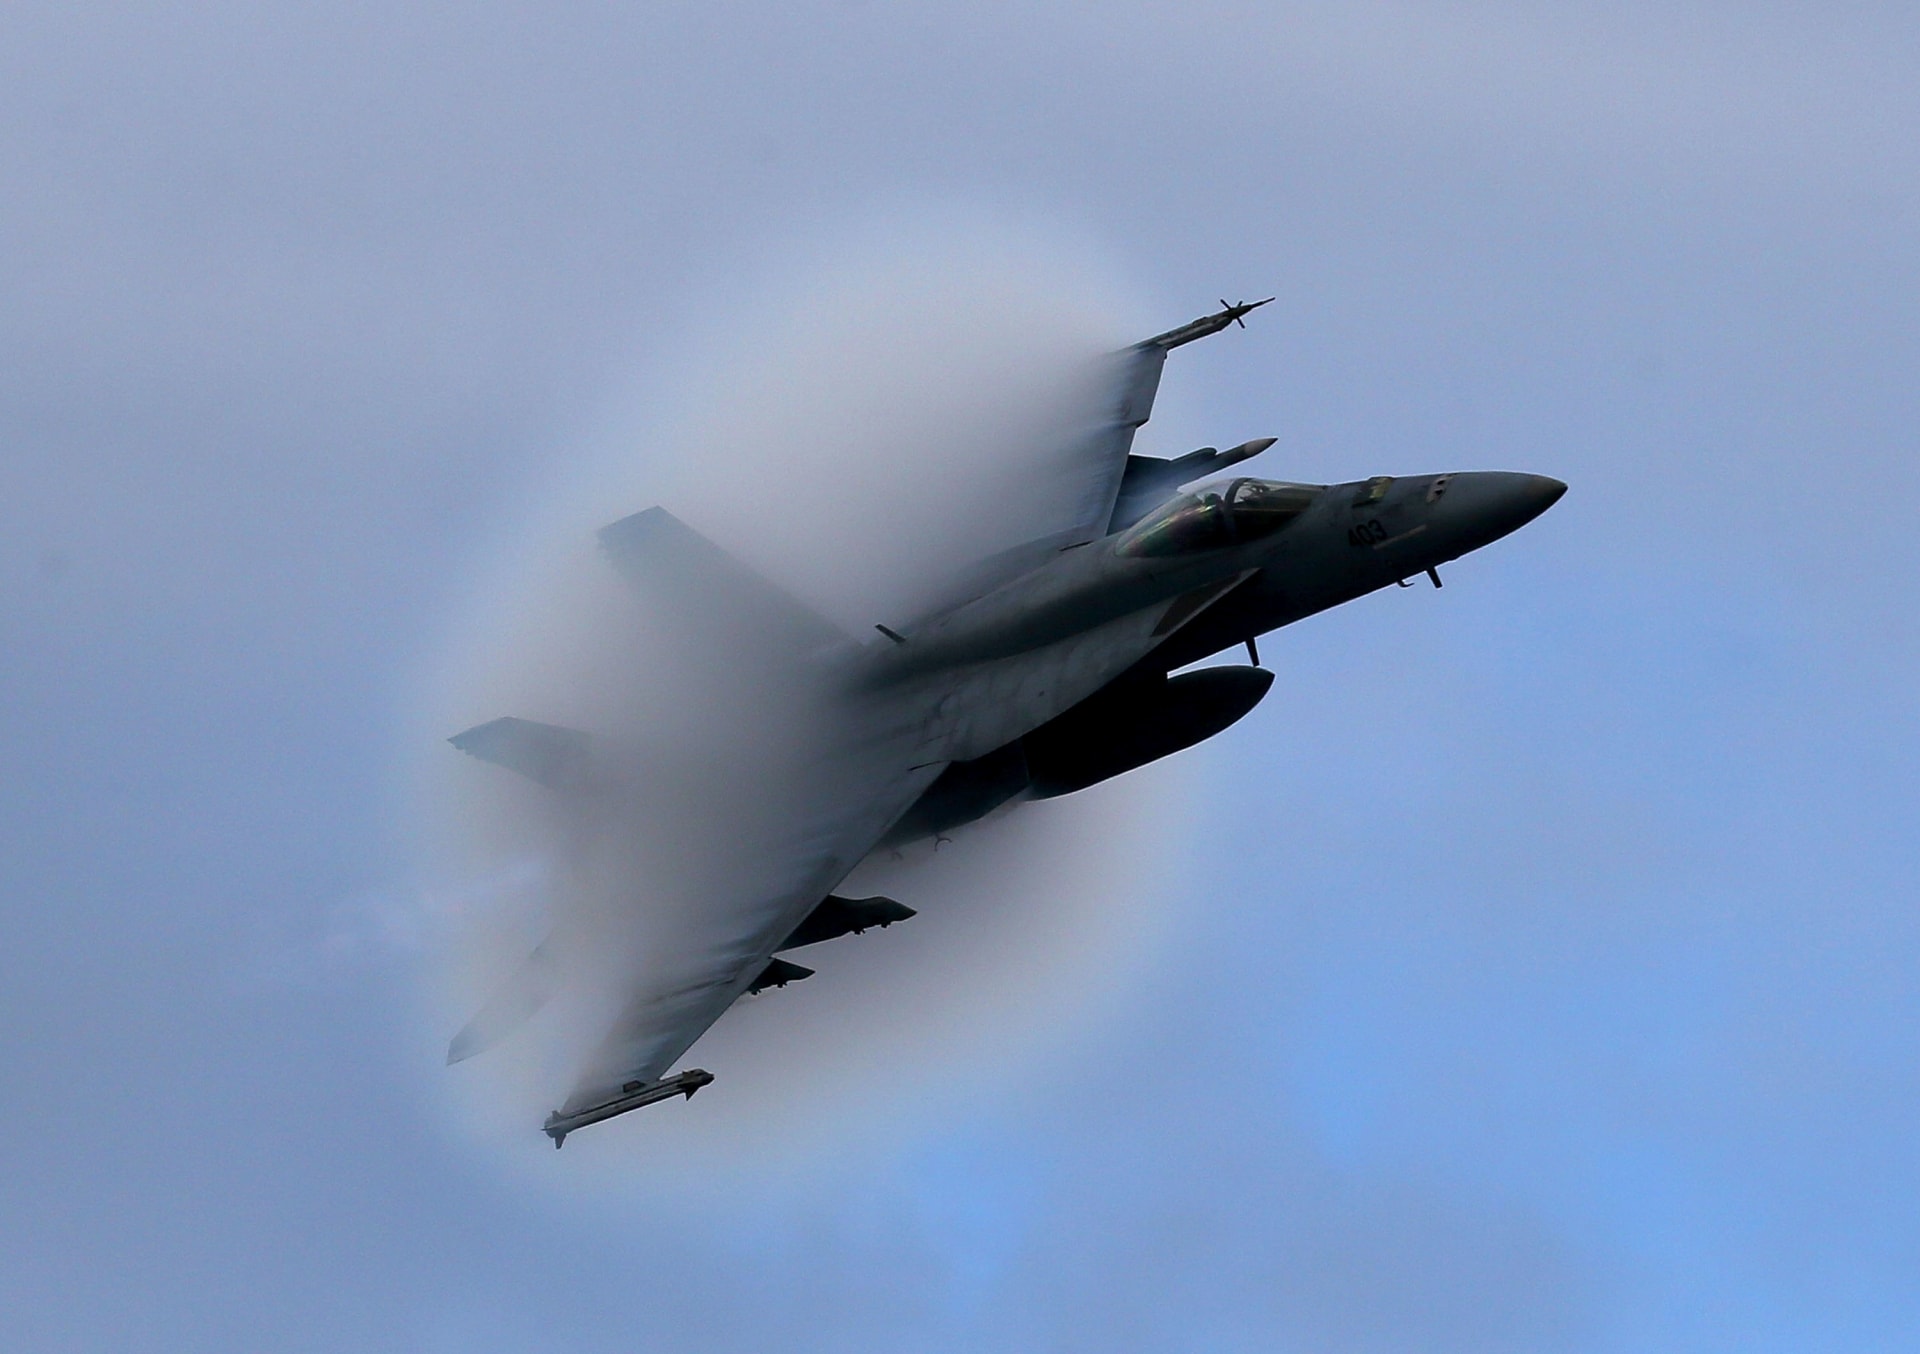 تخلق طائرة F18 Super Hornet مخروط بخار أثناء تحليقها بسرعة فوق ناقلة USS Eisenhower قبالة سواحل فيرجينيا ، 10 ديسمبر 2015